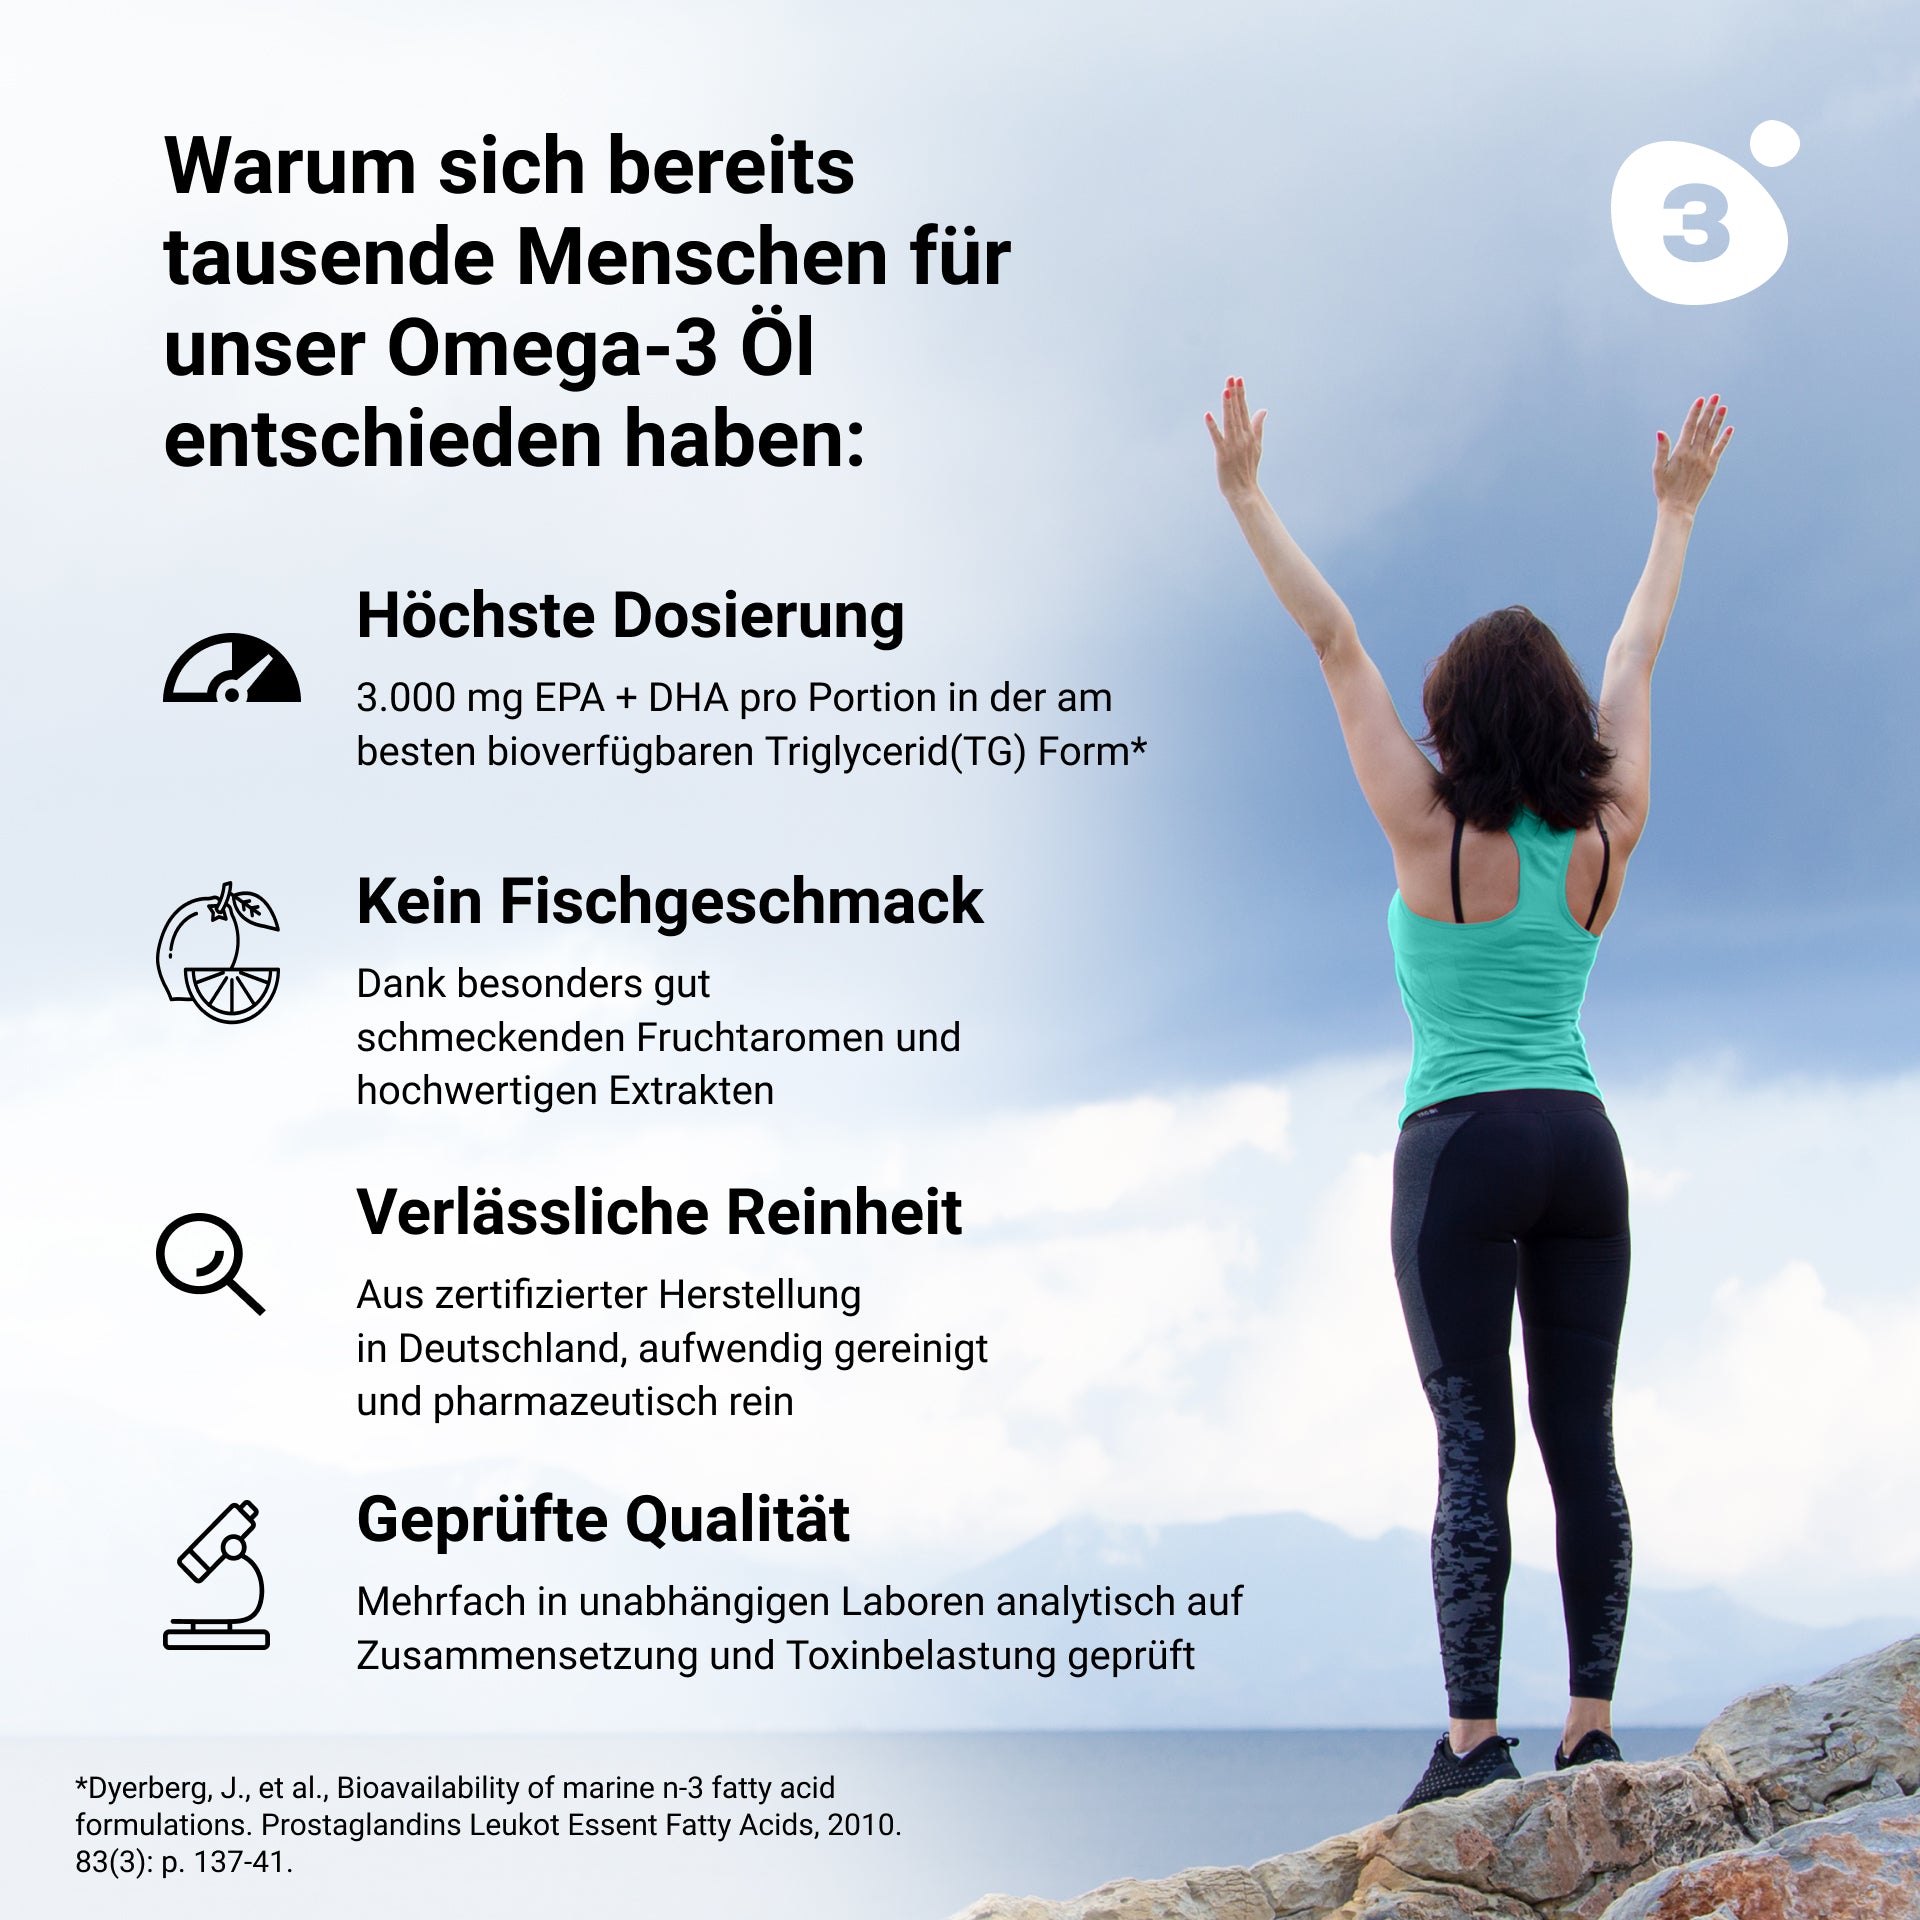 Eine Frau steht mit erhobenen Armen auf einem Felsen und fühlt sich durch omega3zone PLUS der omega3zone GmbH gestärkt.